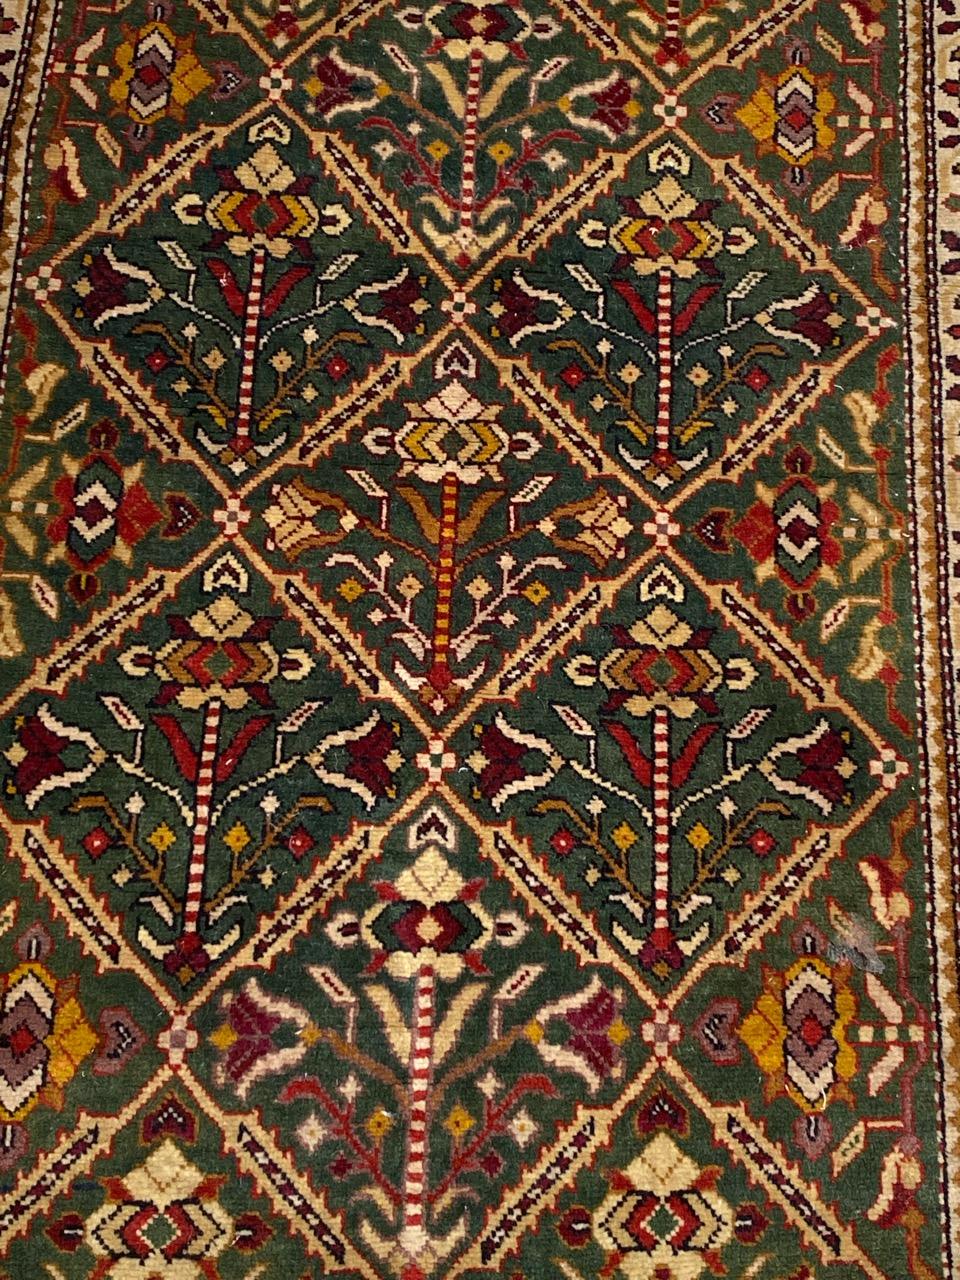 Joli tapis caucasien du milieu du siècle avec un beau design géométrique et de belles couleurs, entièrement et finement noué à la main avec du velours de laine sur une base de coton.

✨✨✨
